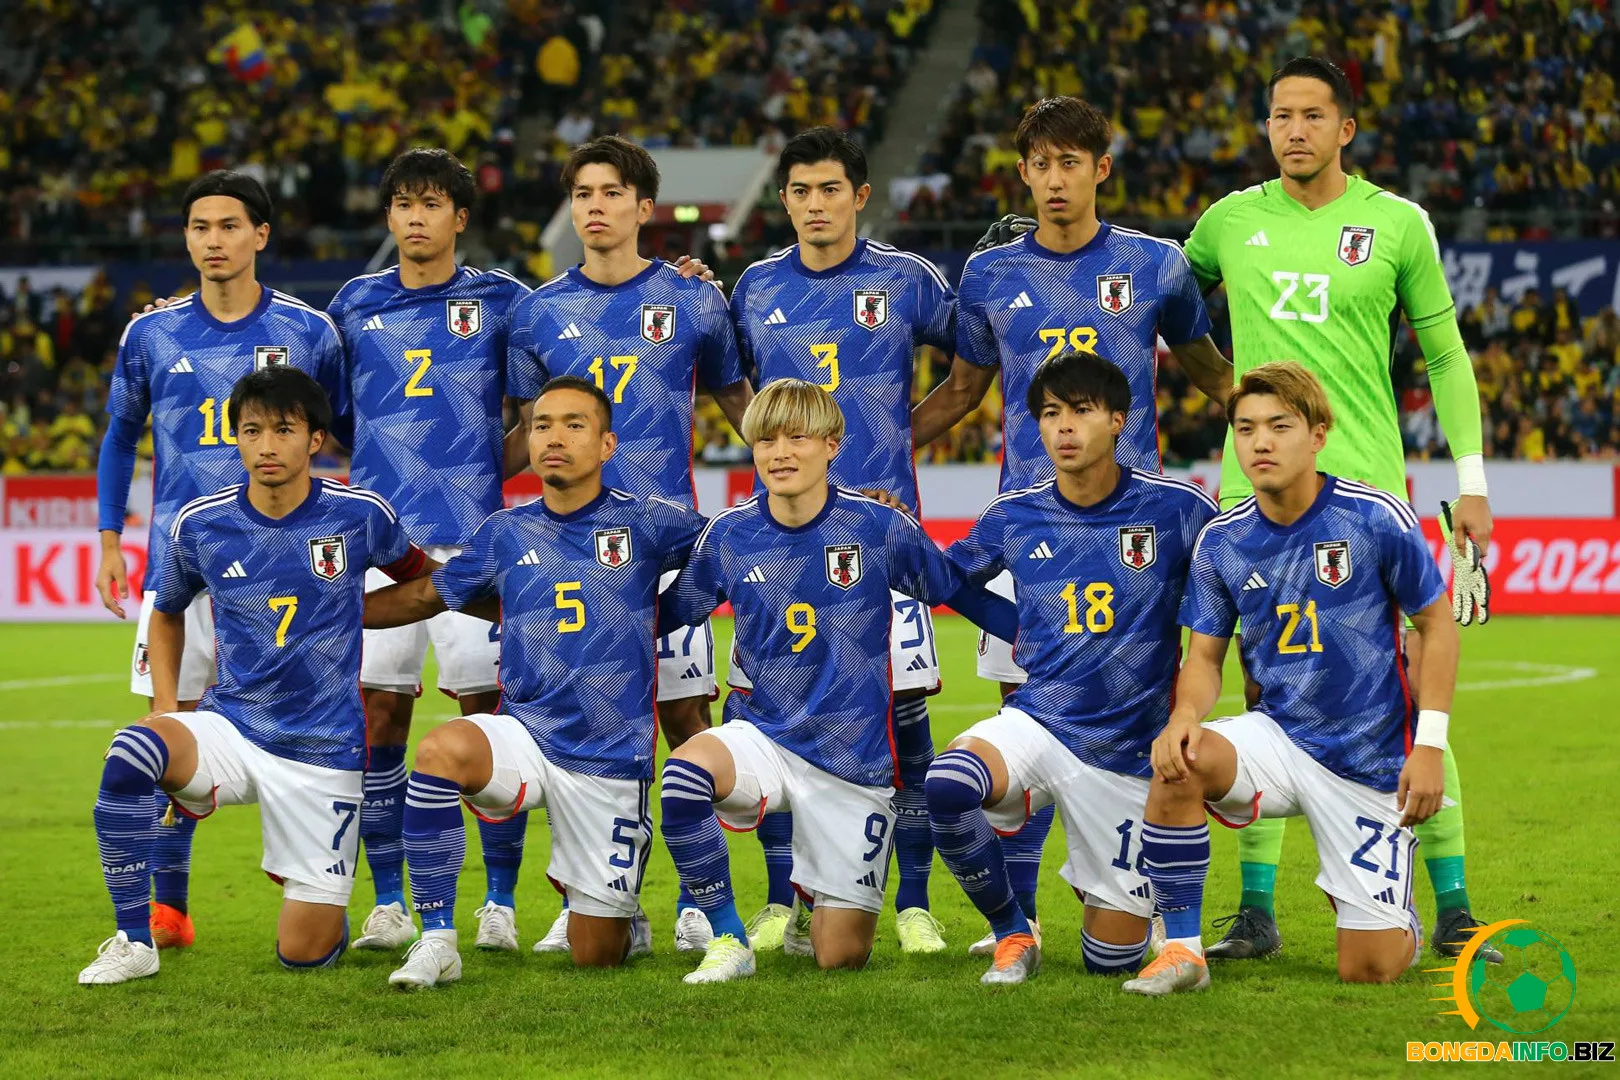 Đội tuyển Nhật Bản đội bóng xuất sắc nhất khu vực châu Á